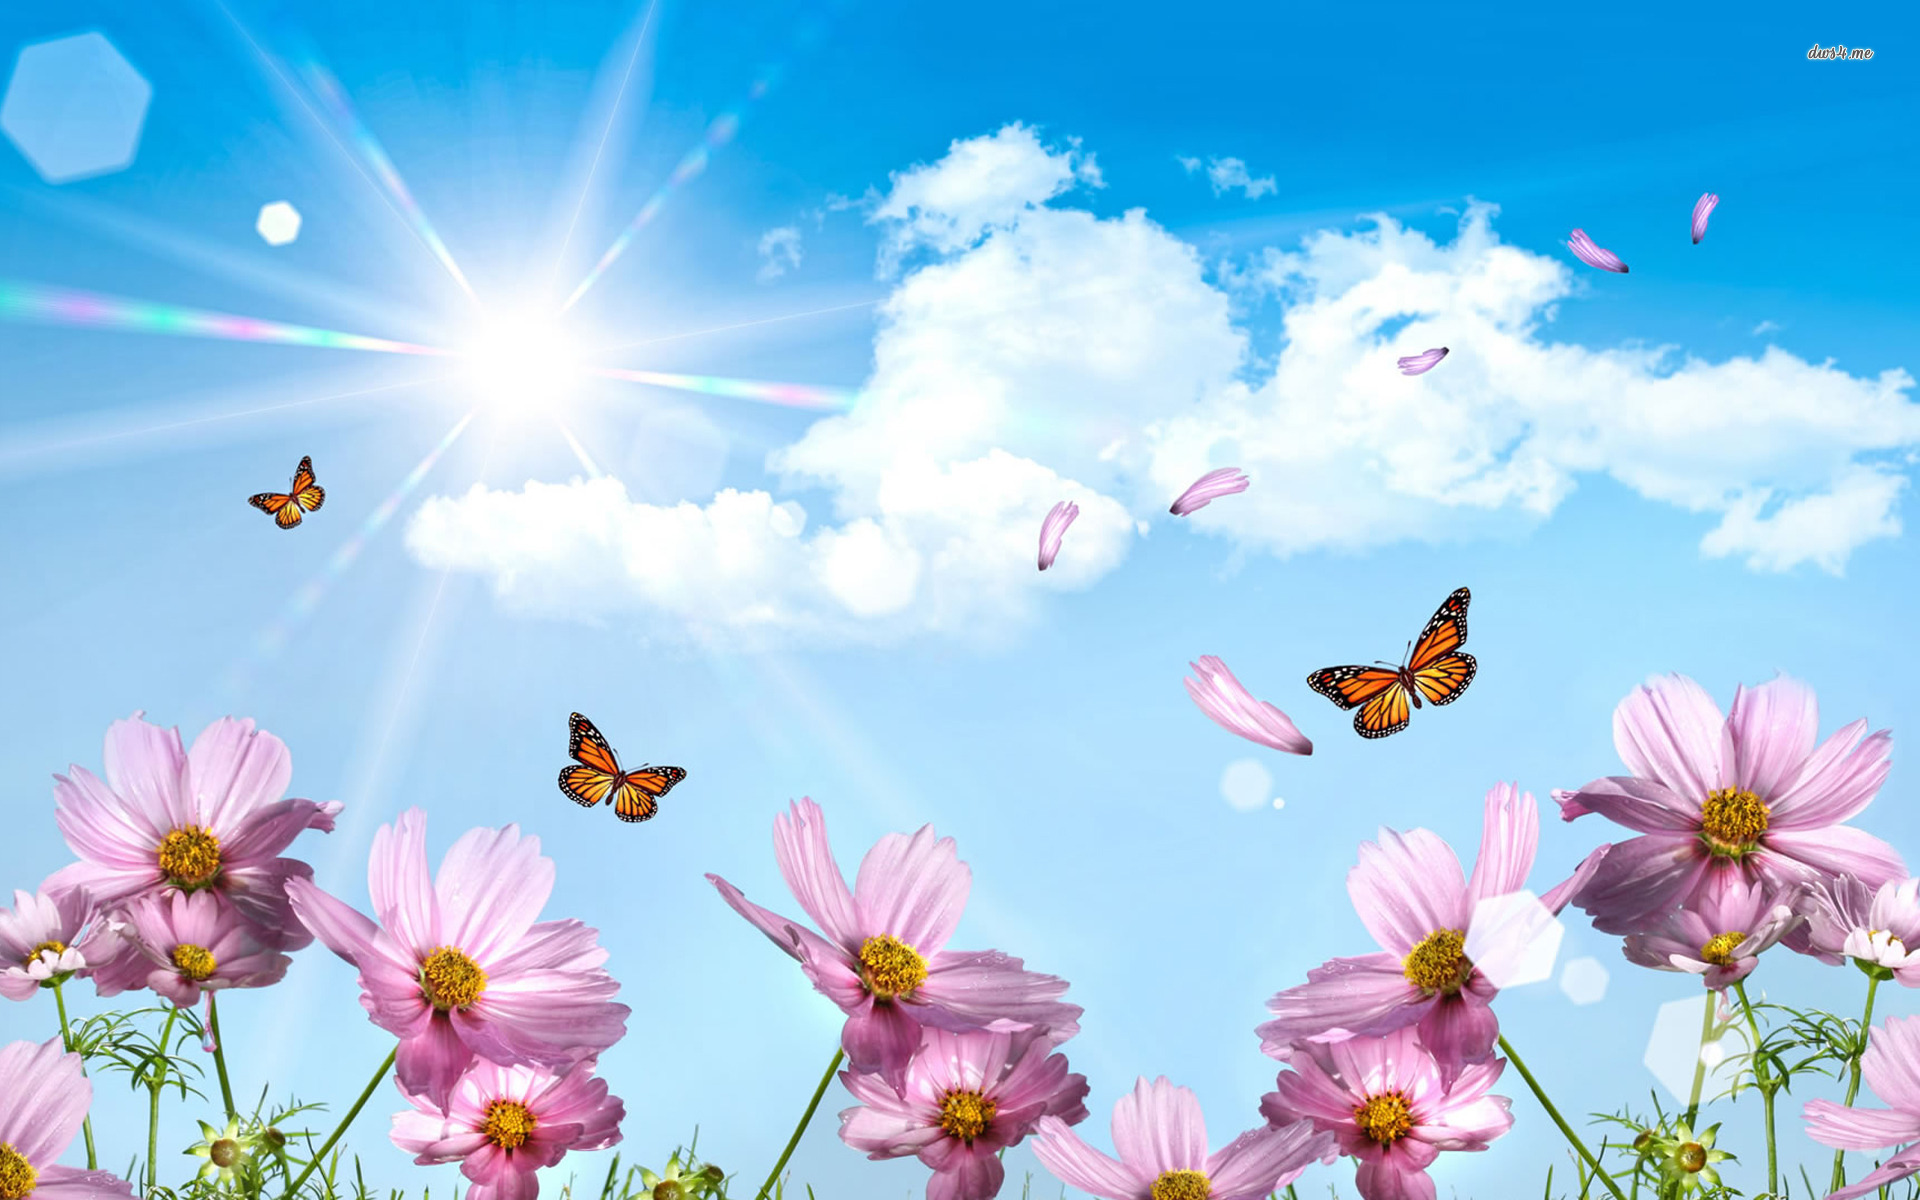 Spring Butterfly Wallpaper Desktop » Outdoors Wallpaper 1080p